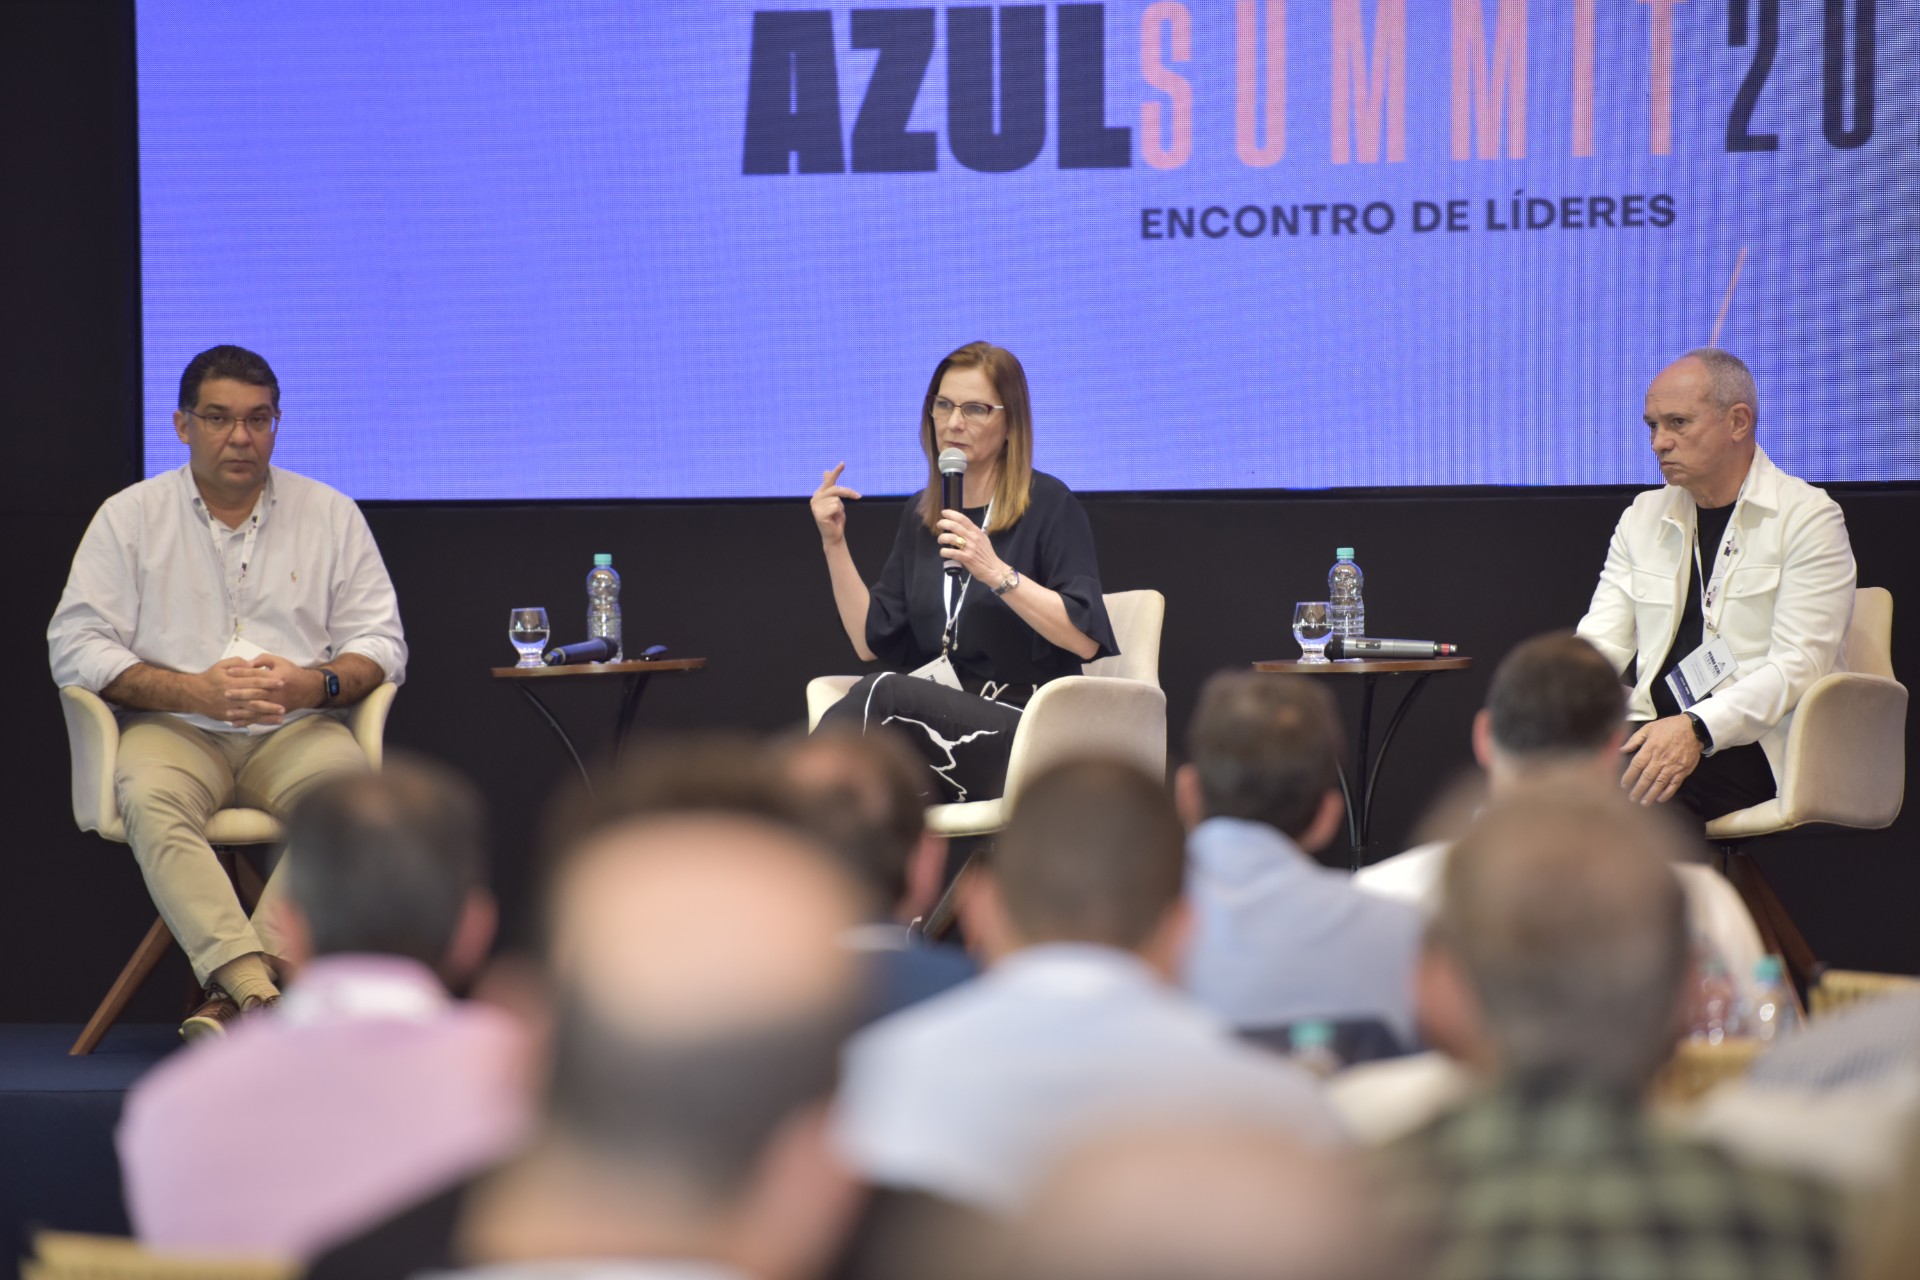 Ana Paula Vêscovi, Paulo Hartung e Mansueto Almeida afirmaram,  no Pedra Azul Summit, que o Brasil tem grandes oportunidades de crescimento, mas, para isso, precisa fazer o dever de casa, que passa pelo controle das contas públicas